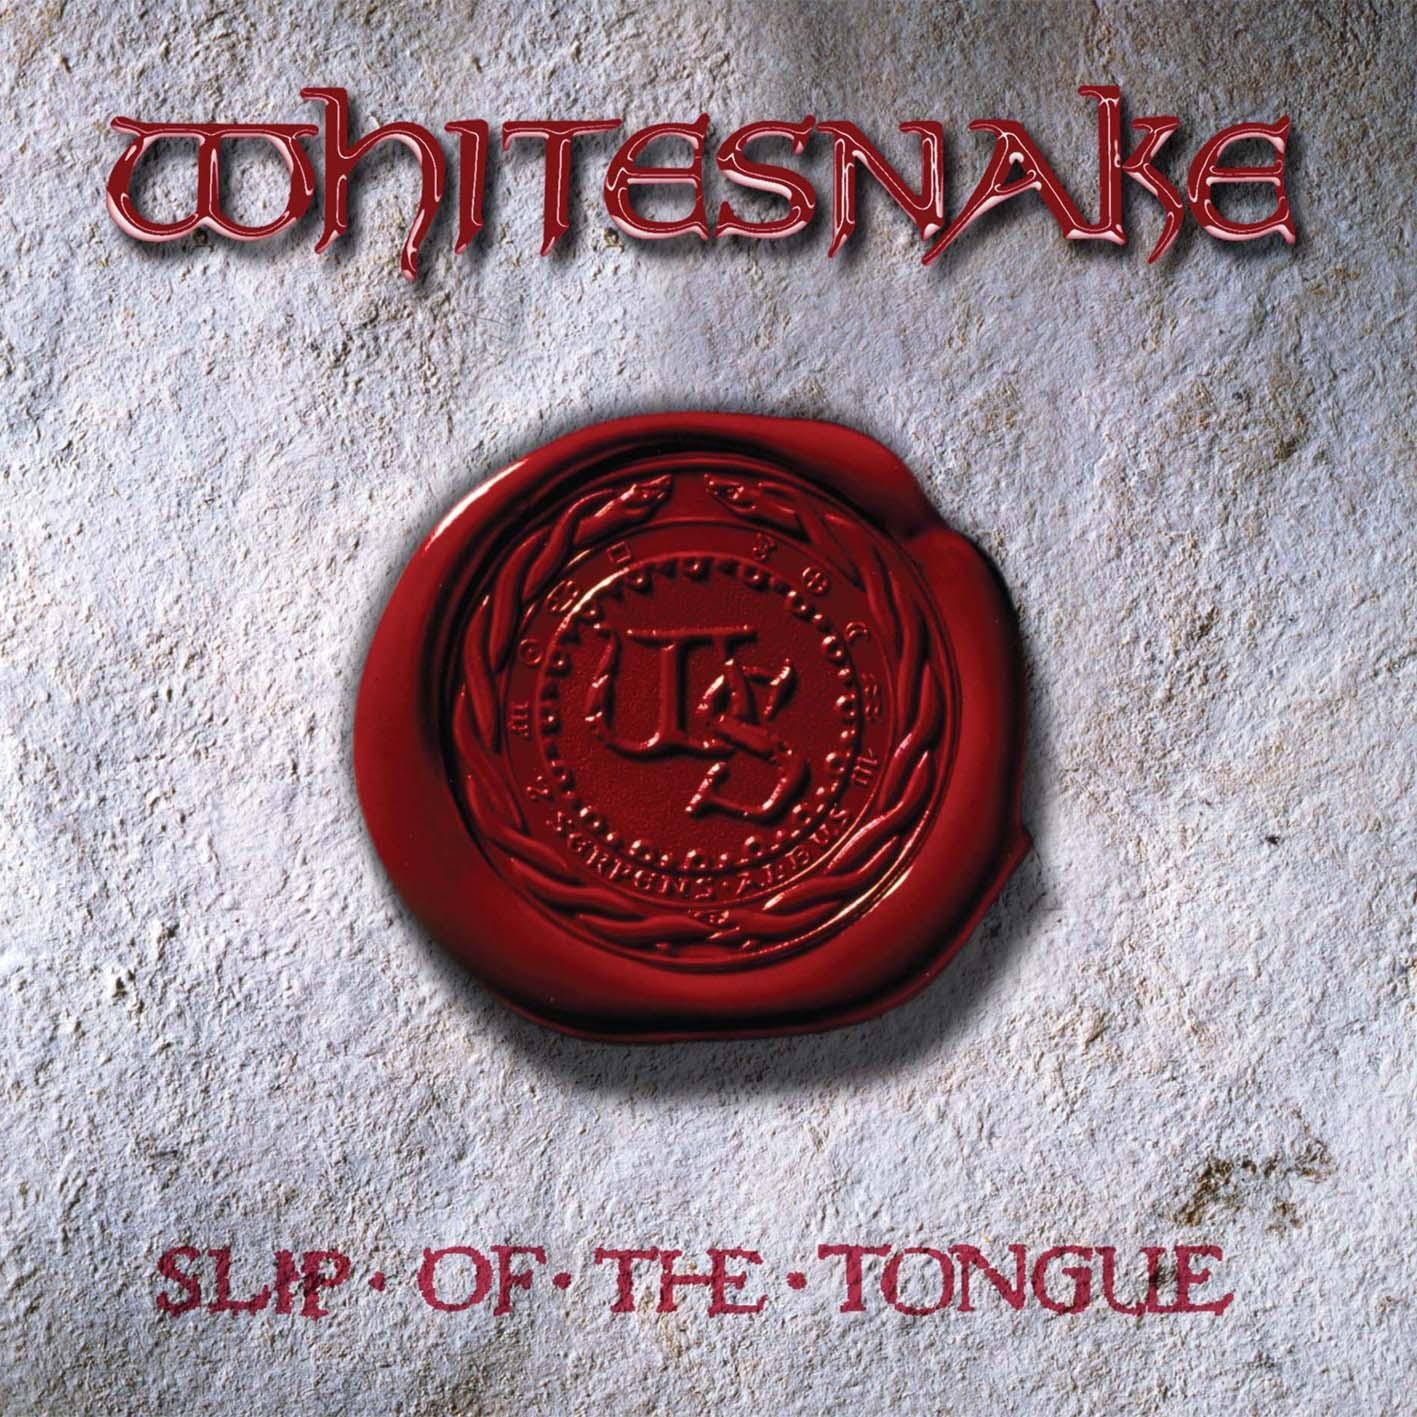 stevevai.it - Whitesnake - Slip of the tongue